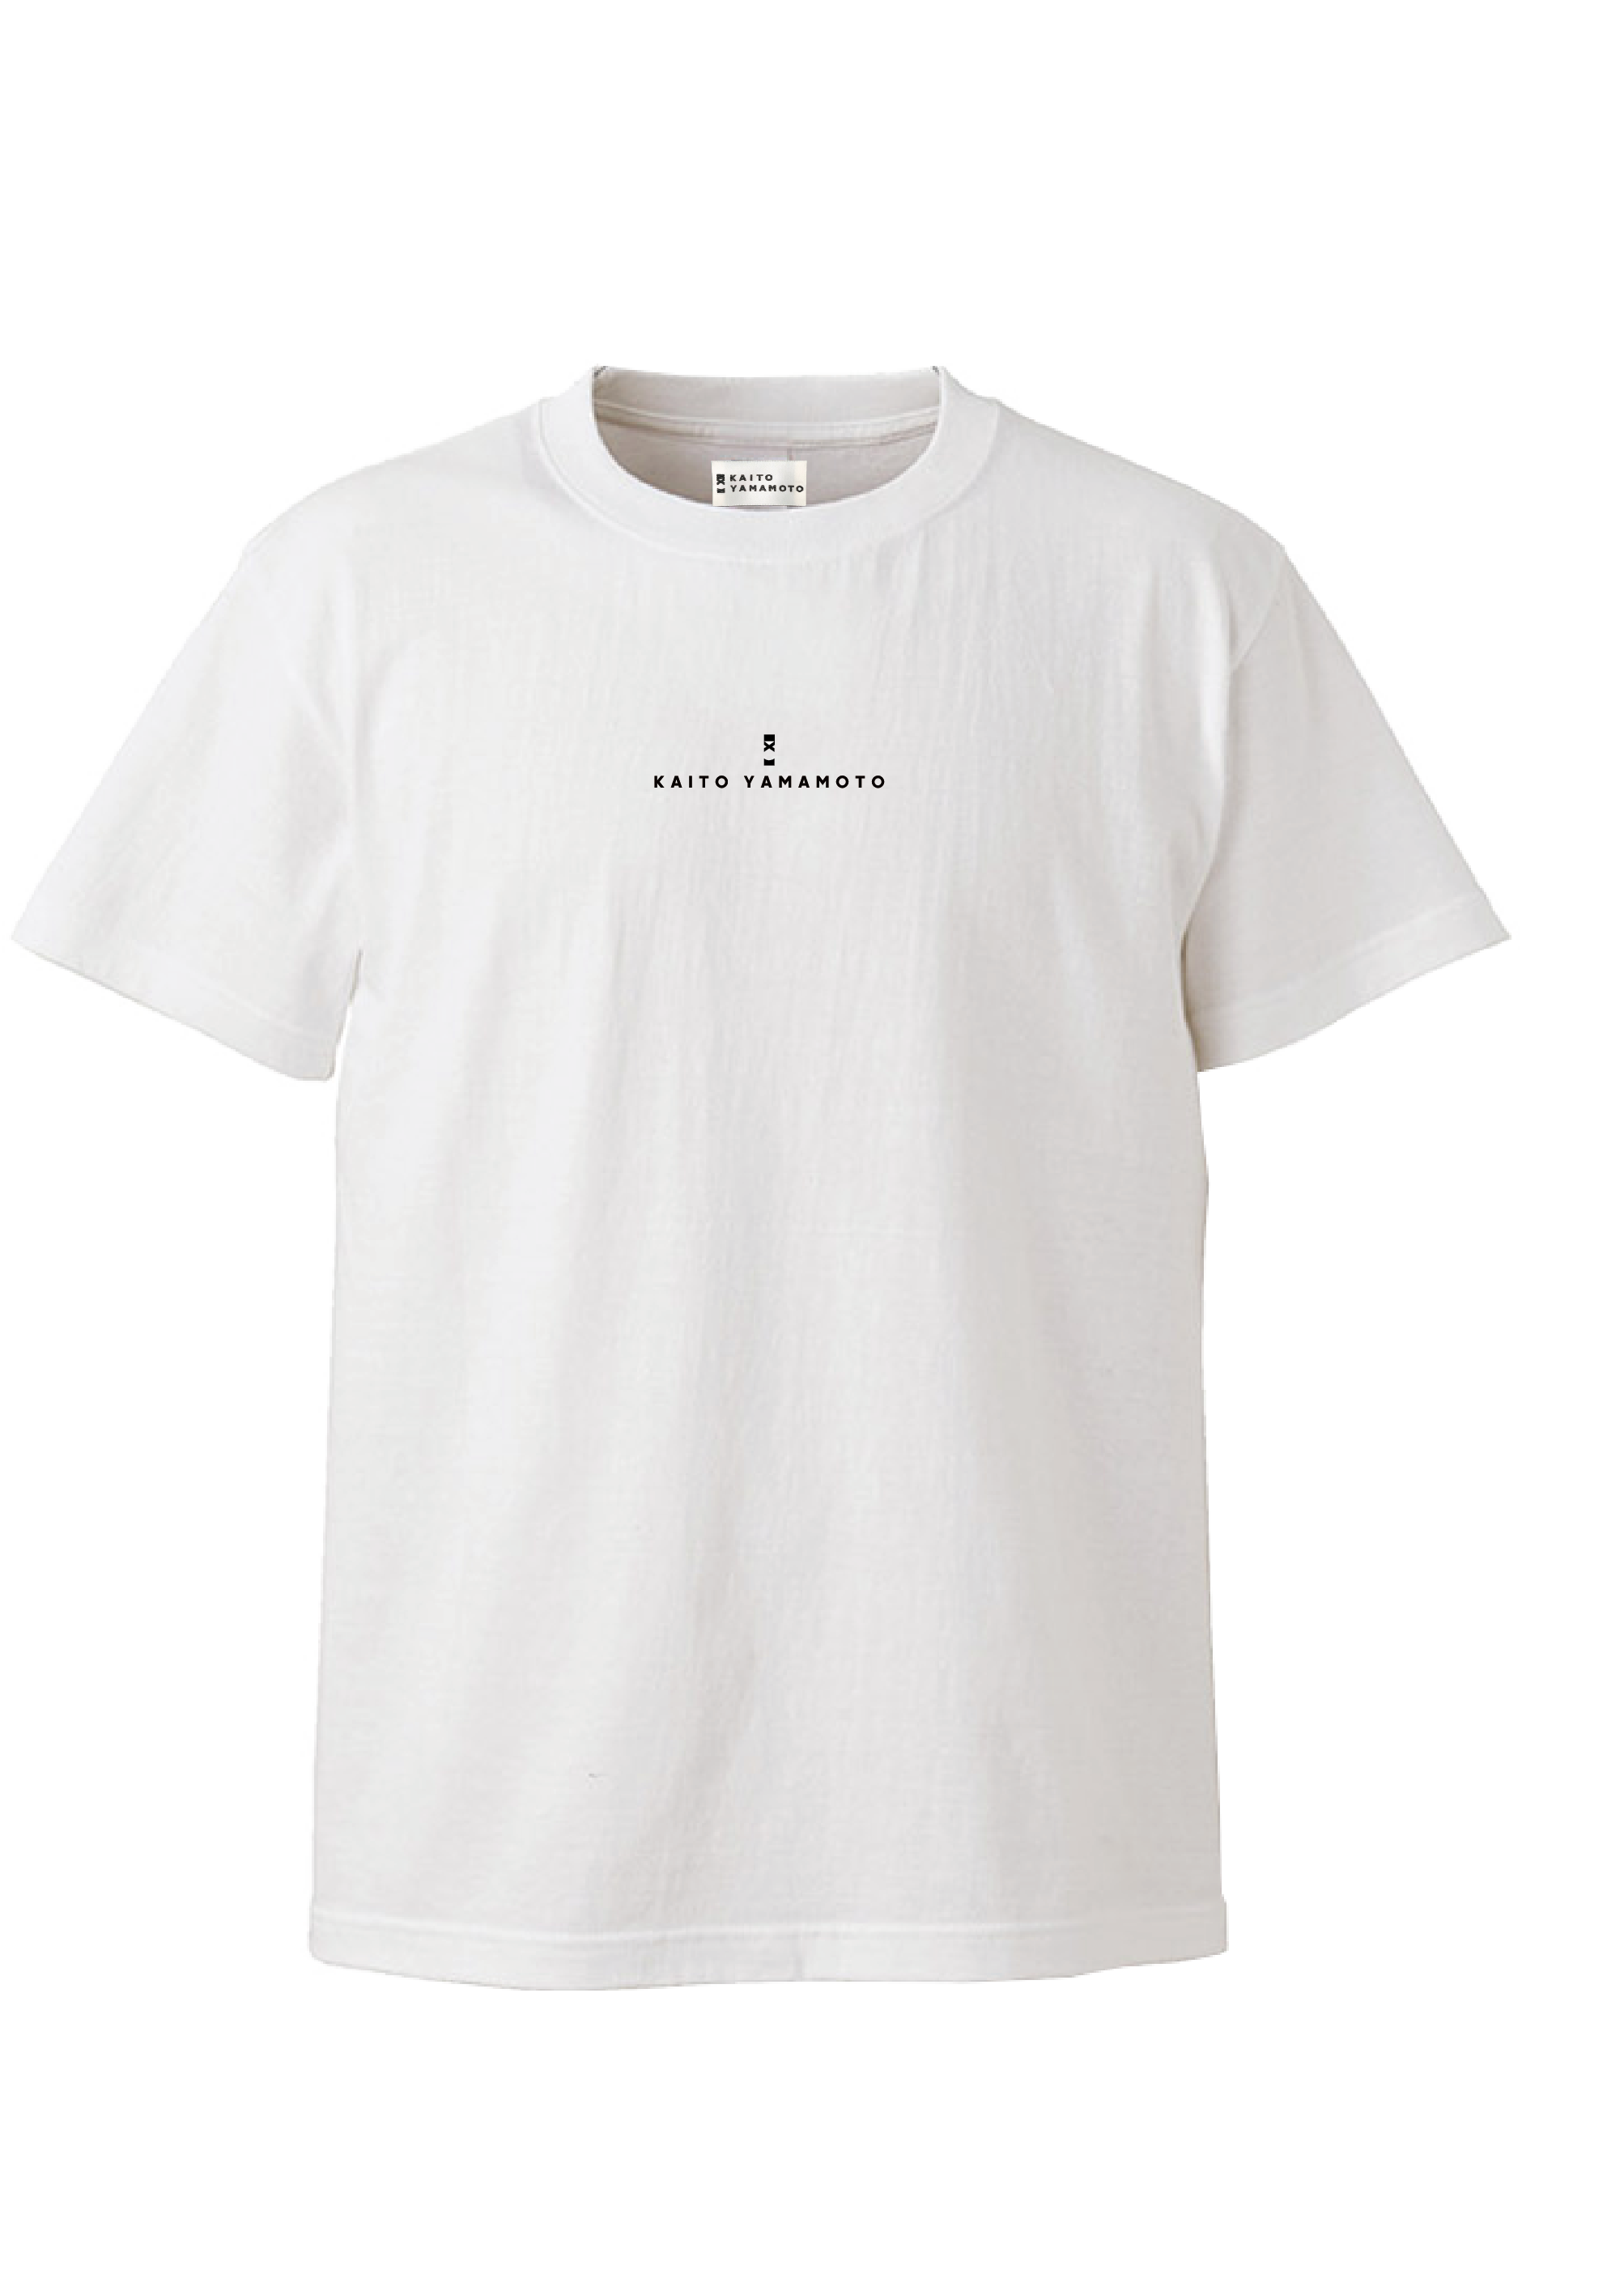 slcl.shop / センターフロント ロゴ入り白Tシャツ（ビッグシルエット）